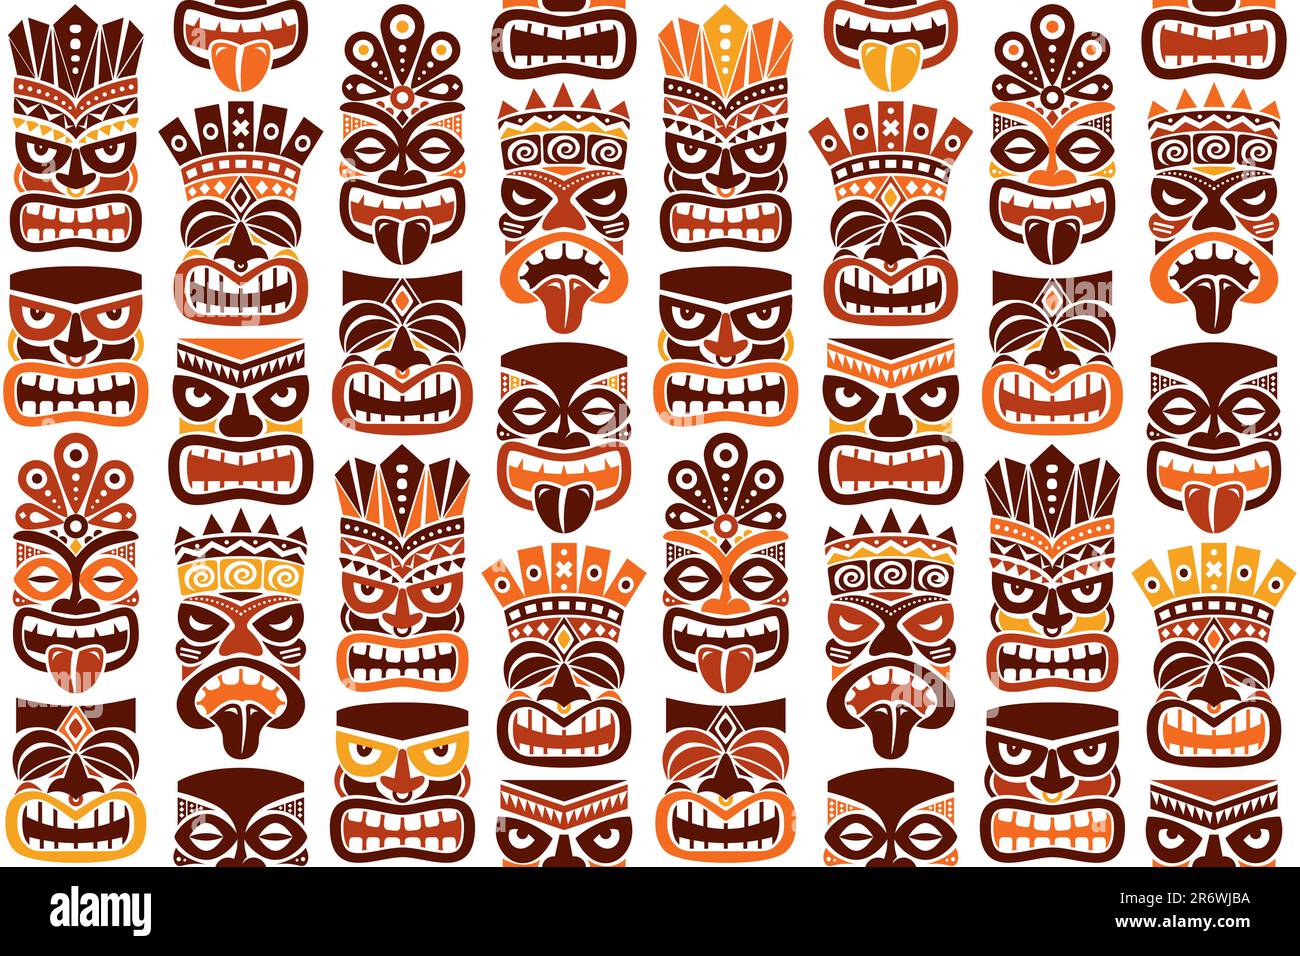 Tiki-Stange Totem-Vektormuster - traditionelle Statue oder Maske, die sich aus Polynesien und Hawaii in Braun und Orange wiederholt Stock Vektor